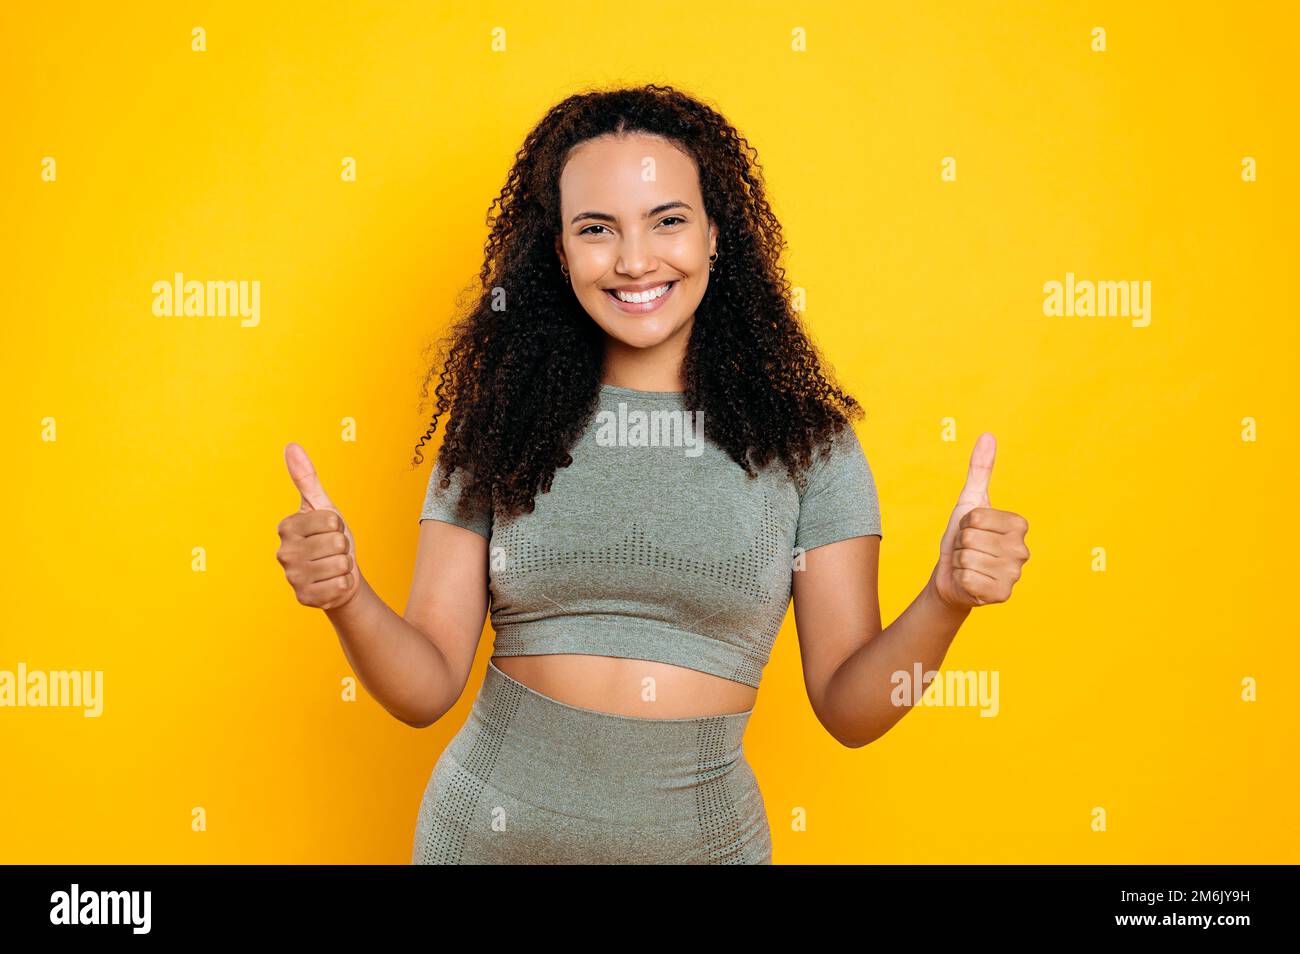 Foto einer positiven, glücklichen, reizenden, lockigen, sportlichen brasilianerin oder hispanischen Sportlerin in Sportbekleidung, mit Daumen-hoch-Geste, sieht in die Kamera, lächelt, steht auf isoliertem orangefarbenen Hintergrund Stockfoto